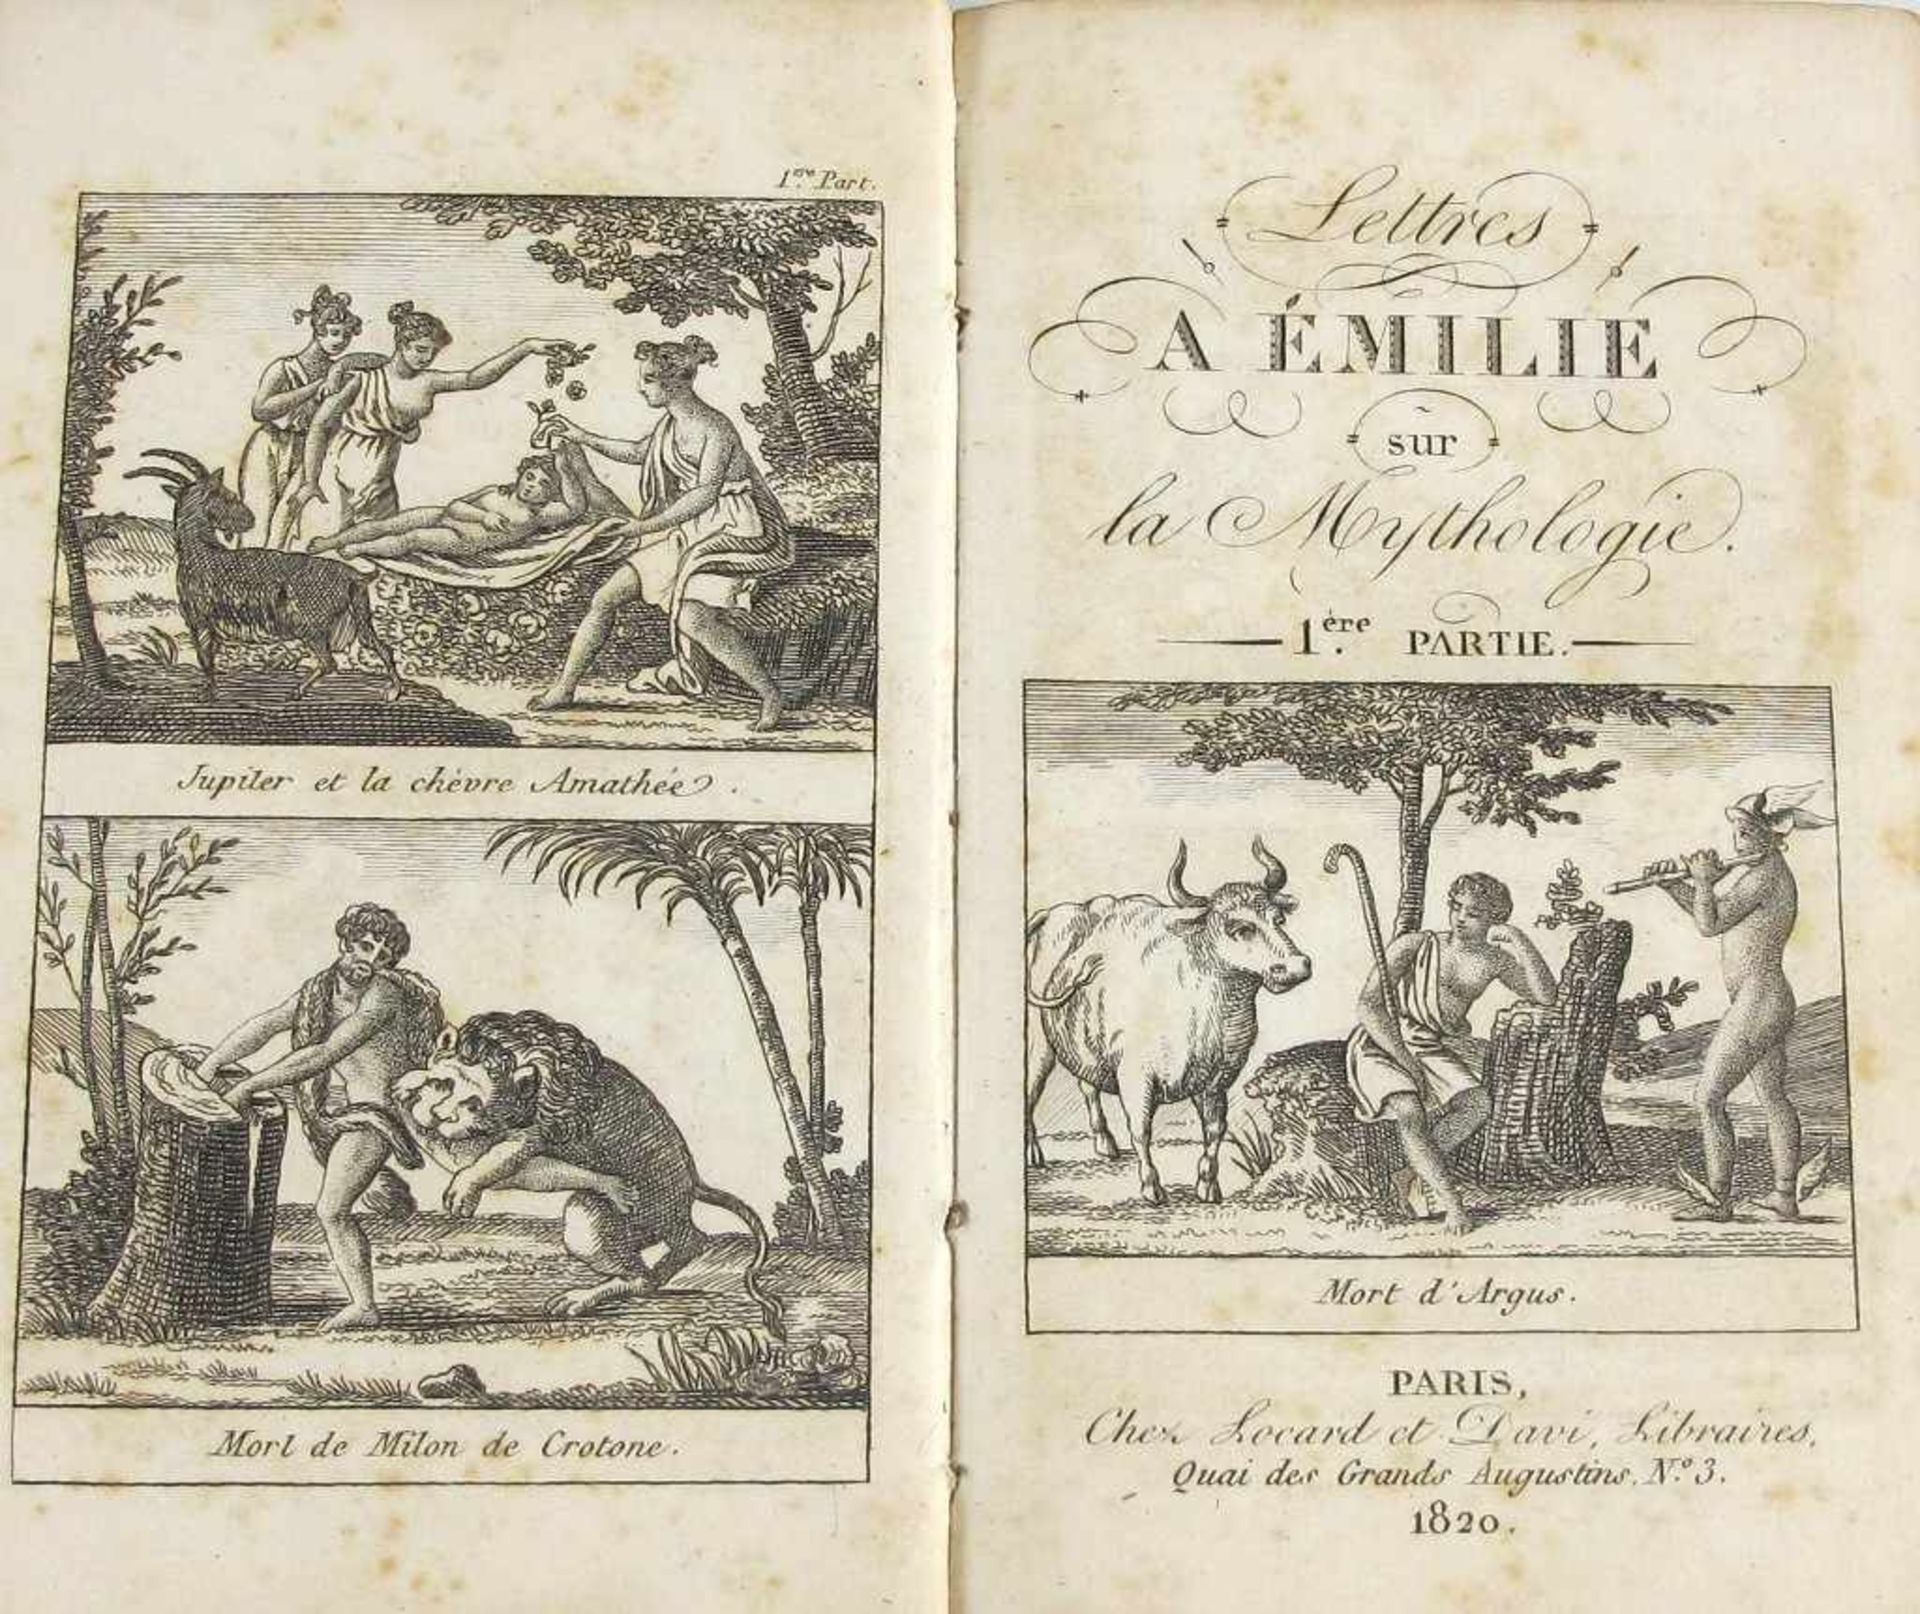 (Demoustier, Charles-Albert) Lettres a Emilie sur la Mythologie. Paris, chez Locard et Davi, 1820. - Image 2 of 2